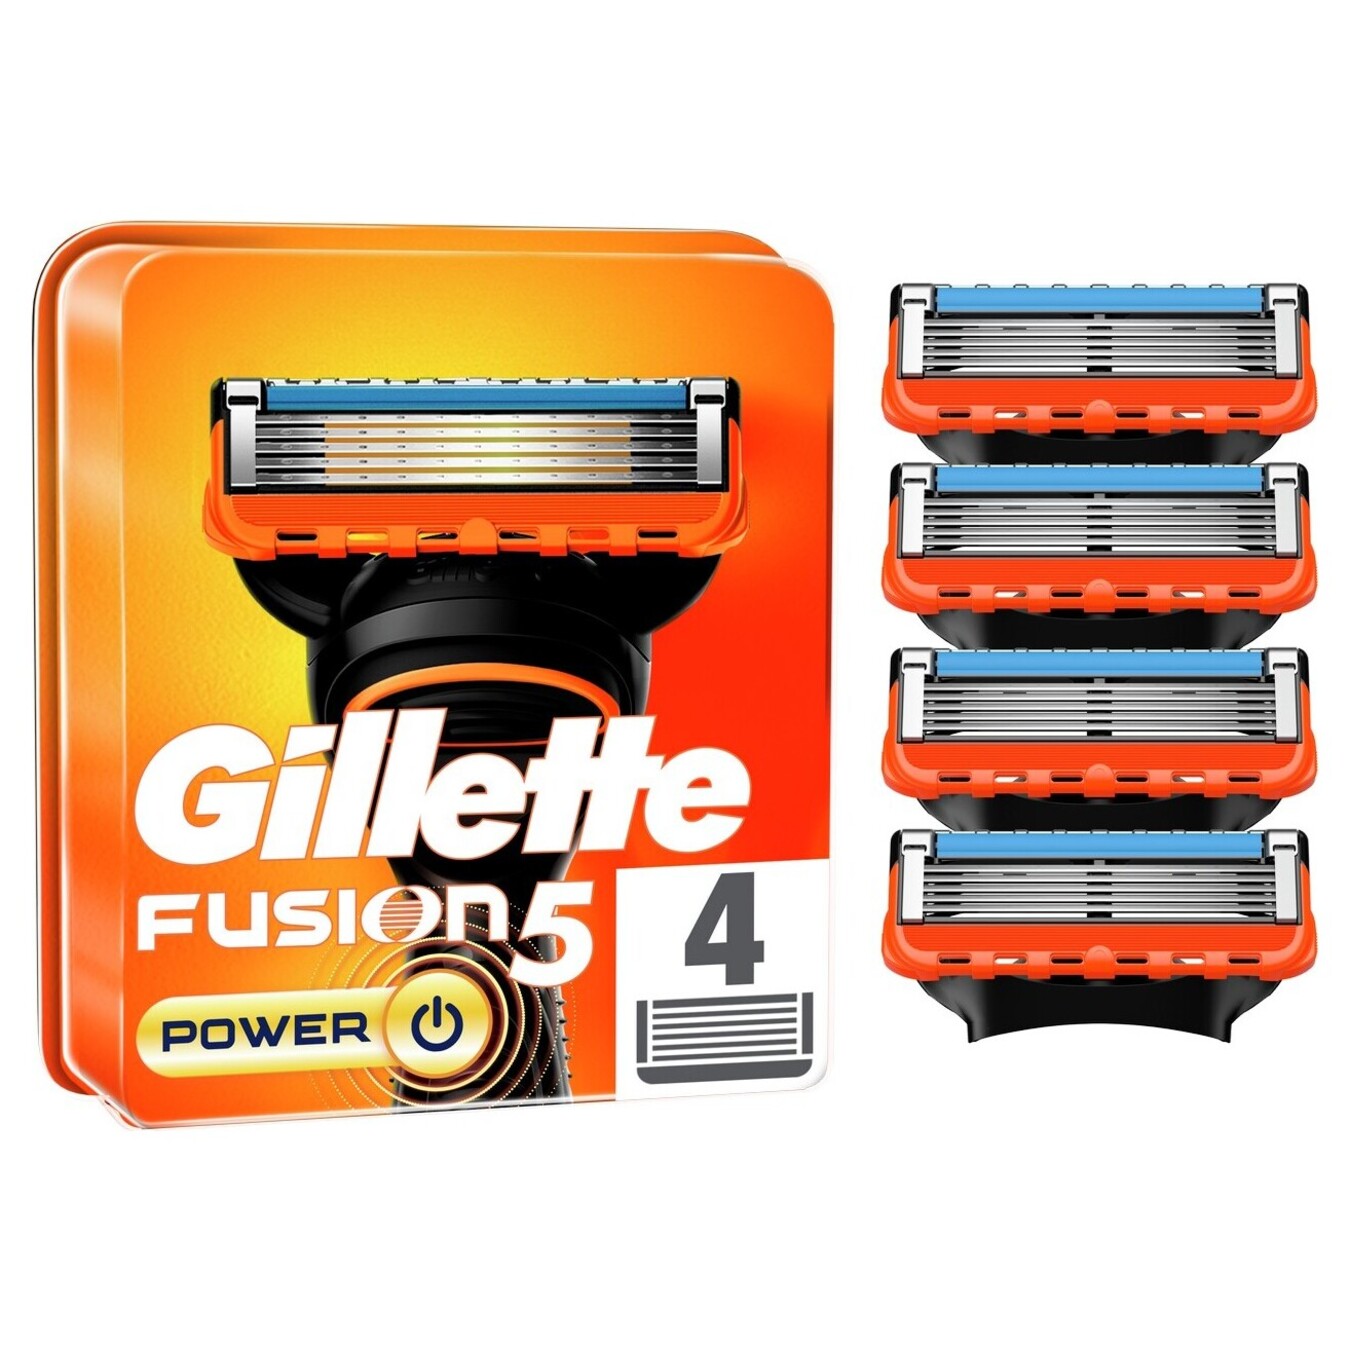 Cartridges for shaving Gillette Fusion 5 Power replaceable 4pcs 2